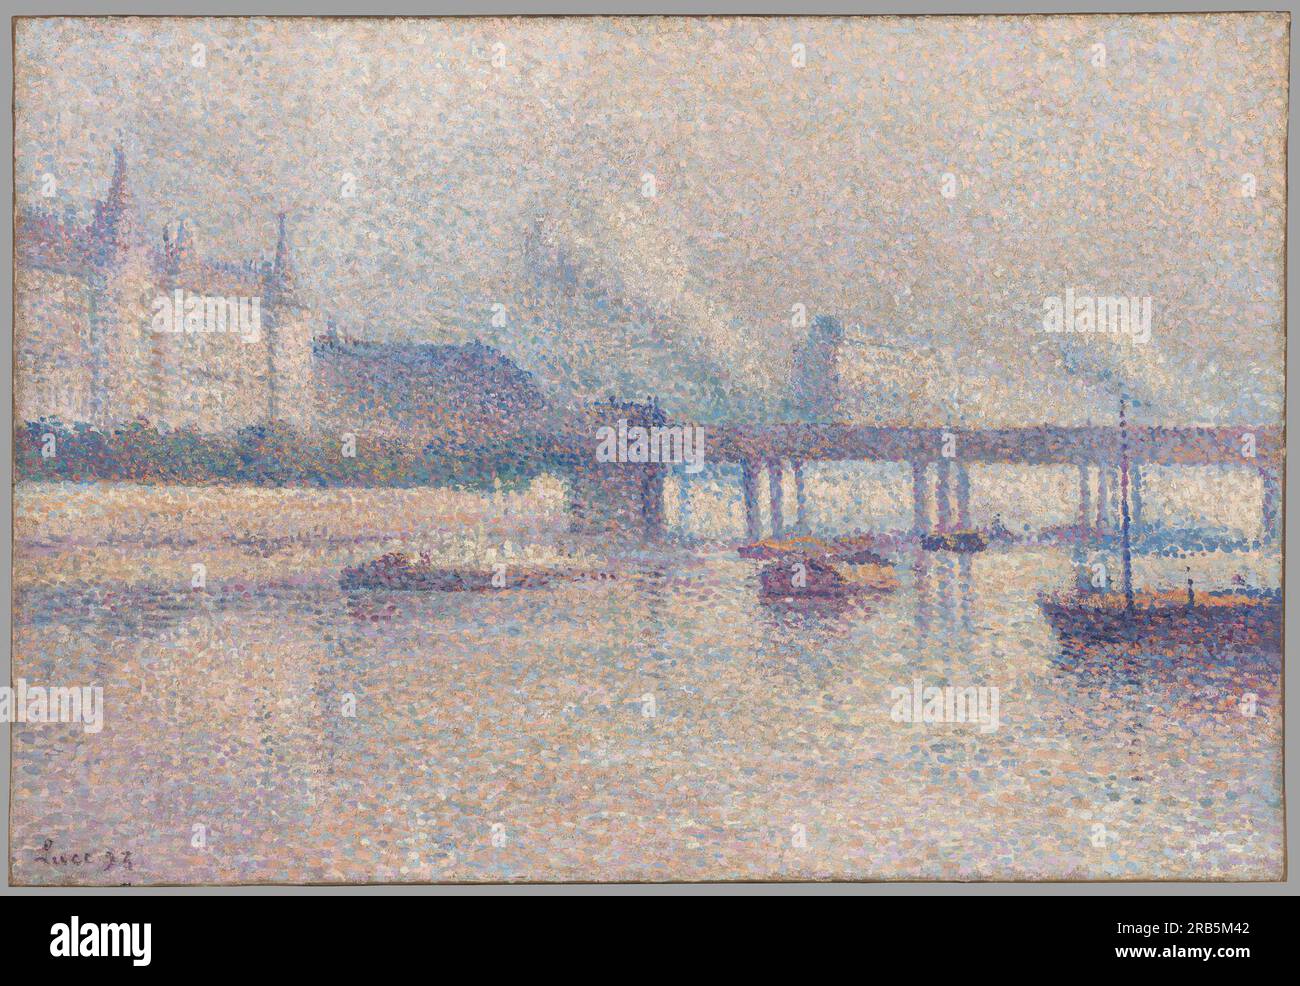 Le rive della Senna a Parigi 1893 di Maximilien luce Foto Stock